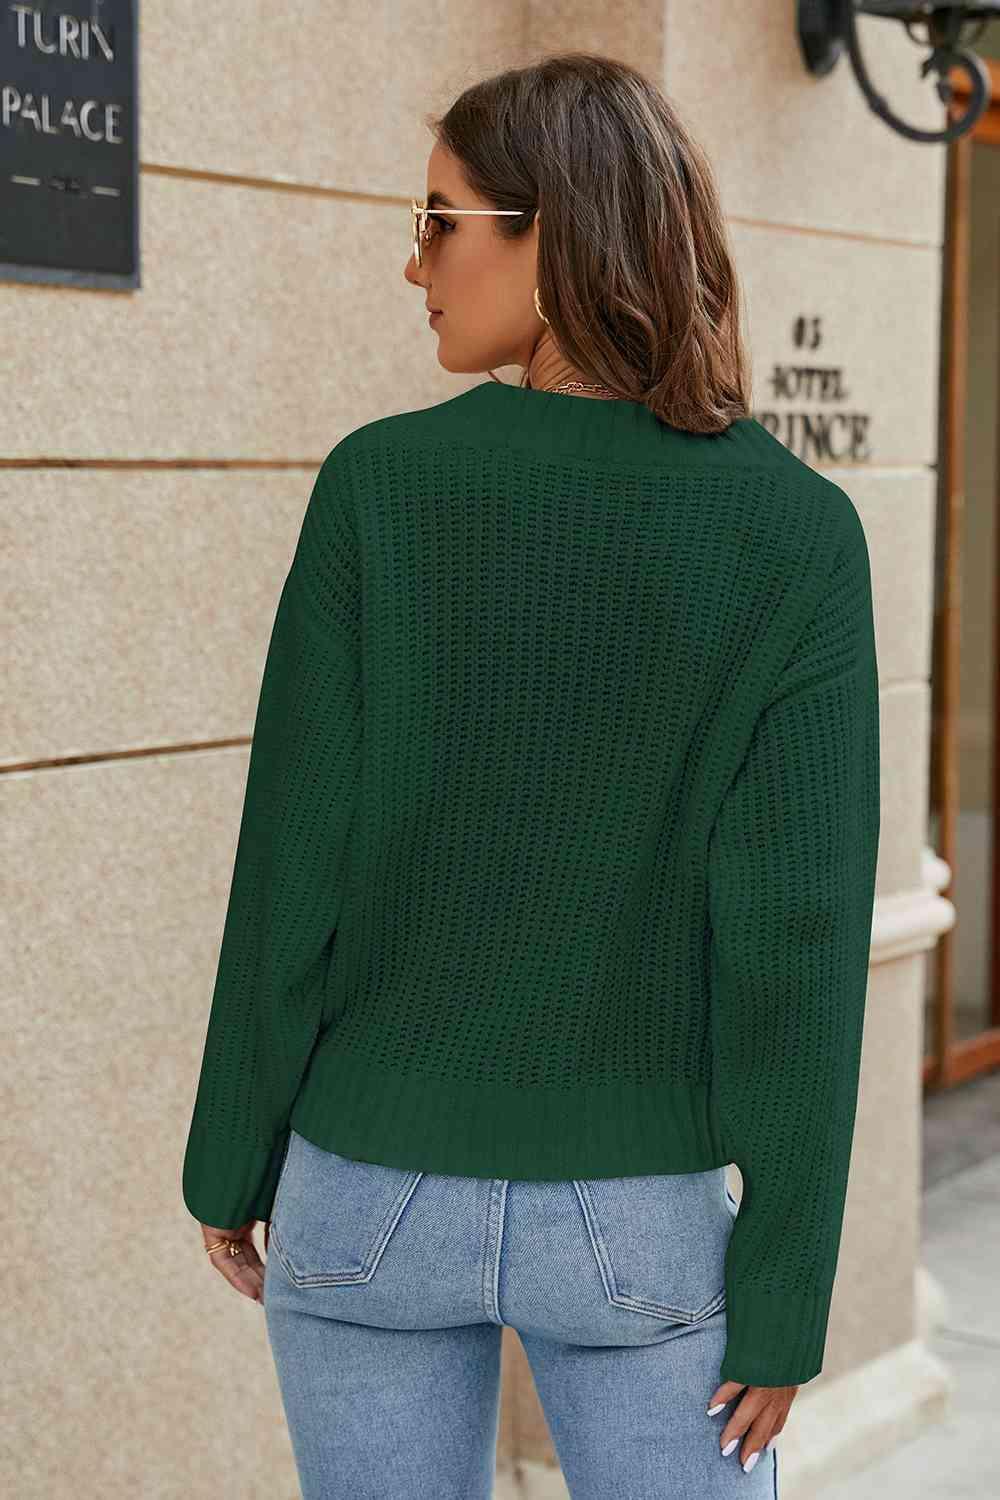 Openwork Surplice Long Sleeve Sweater - Bona Fide Fashion